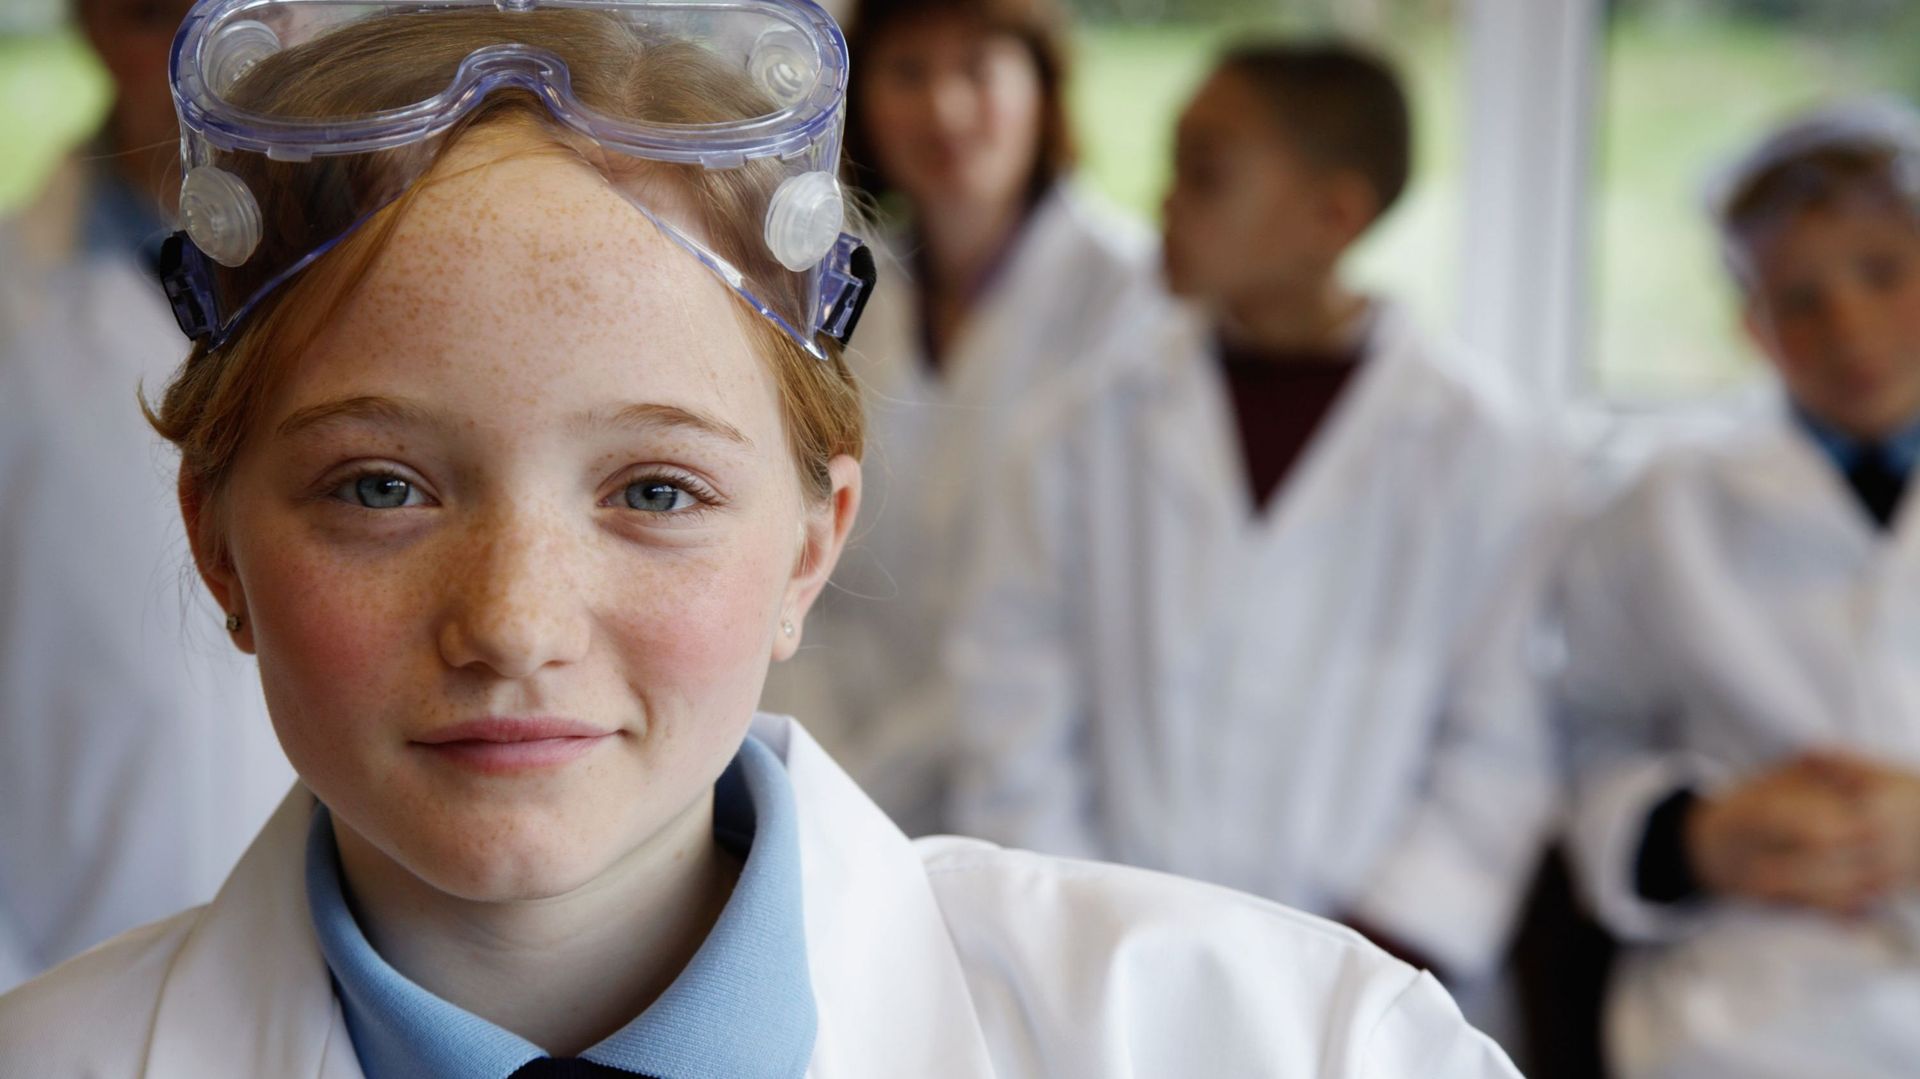 Schoolgirl (11-13) in science class, smiling, portrait (focus on girl)